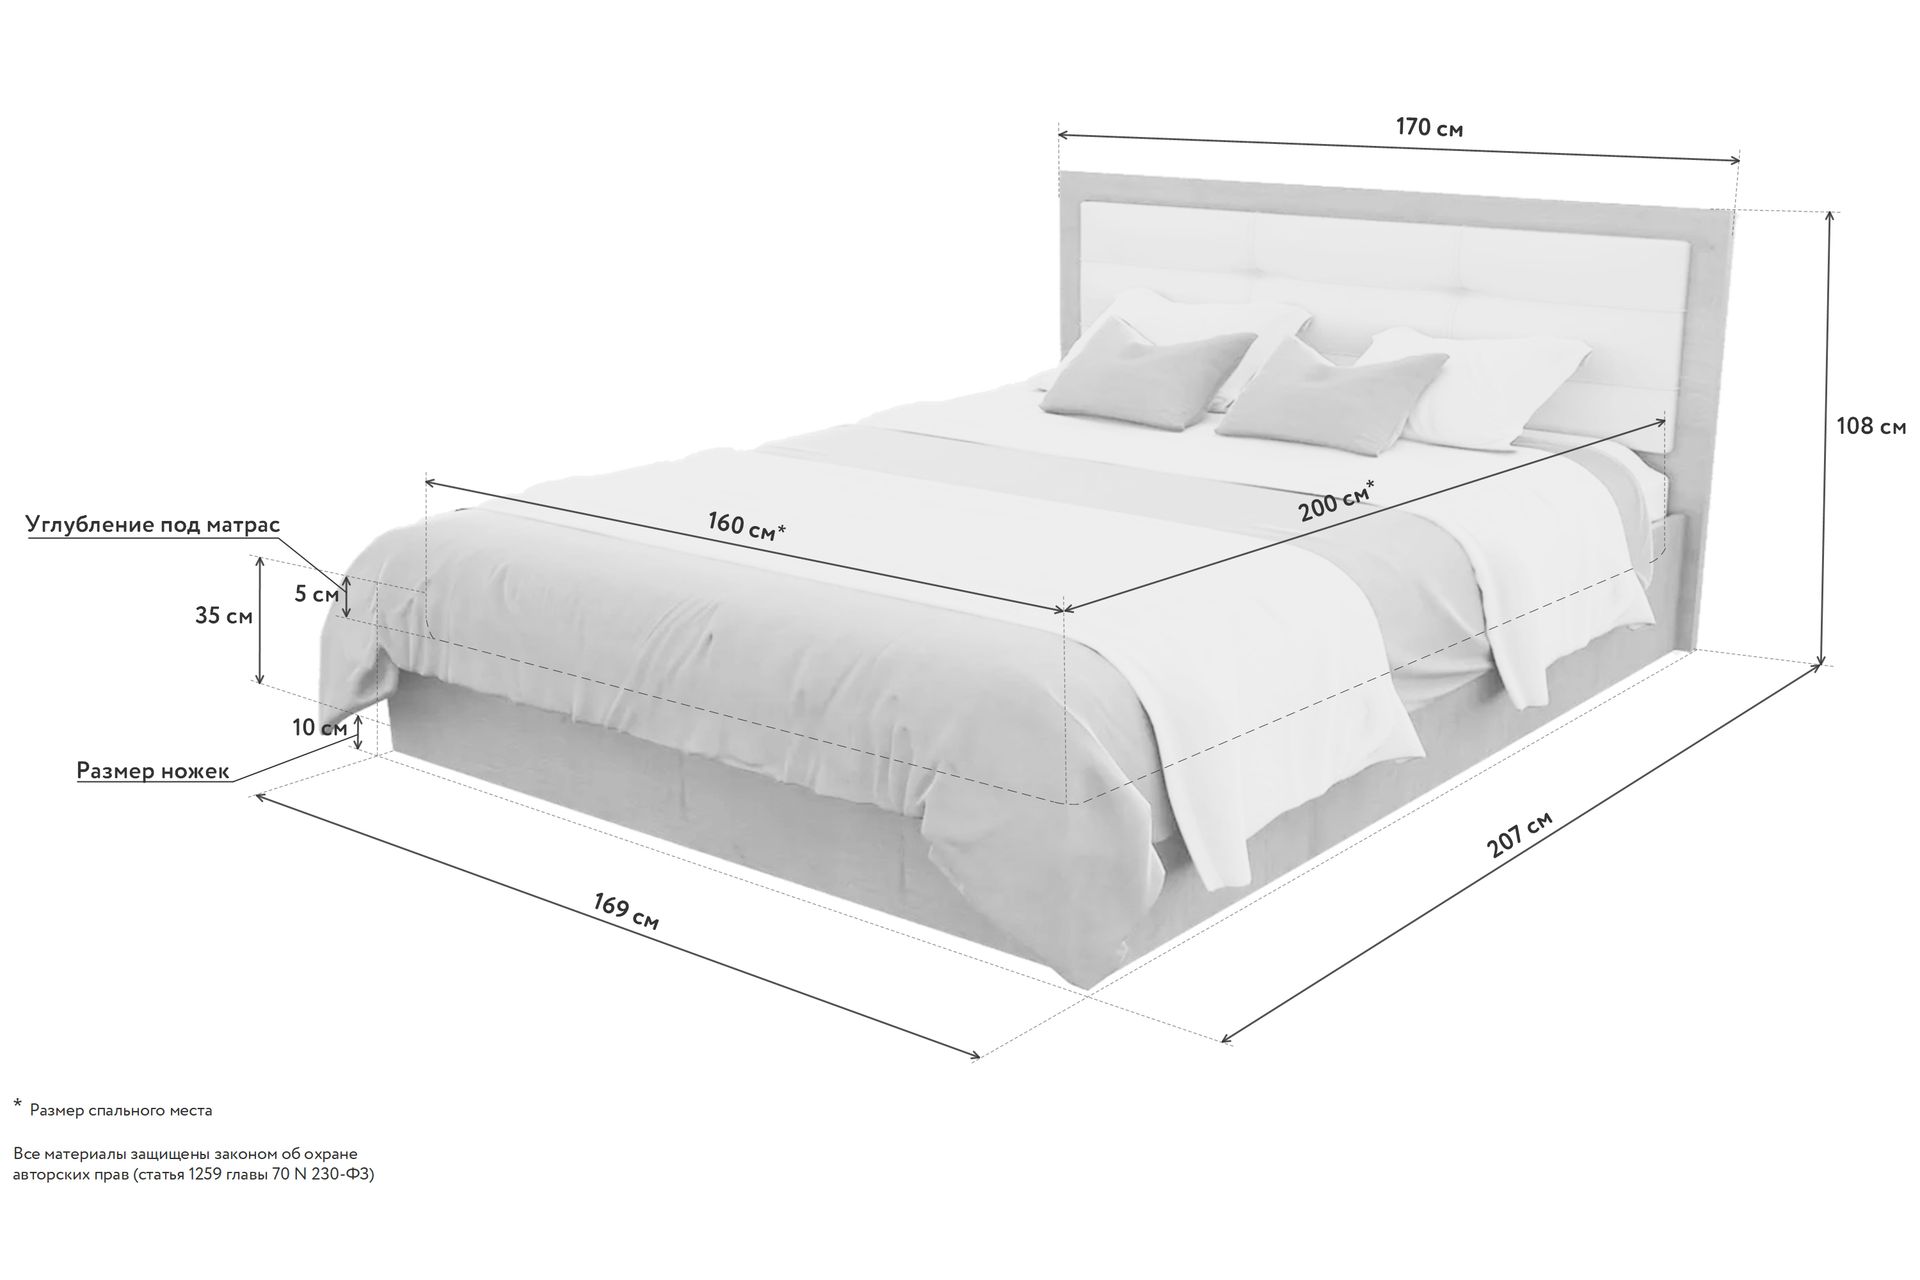 минимальный разрыв между длинными сторонами кровати должен составлять